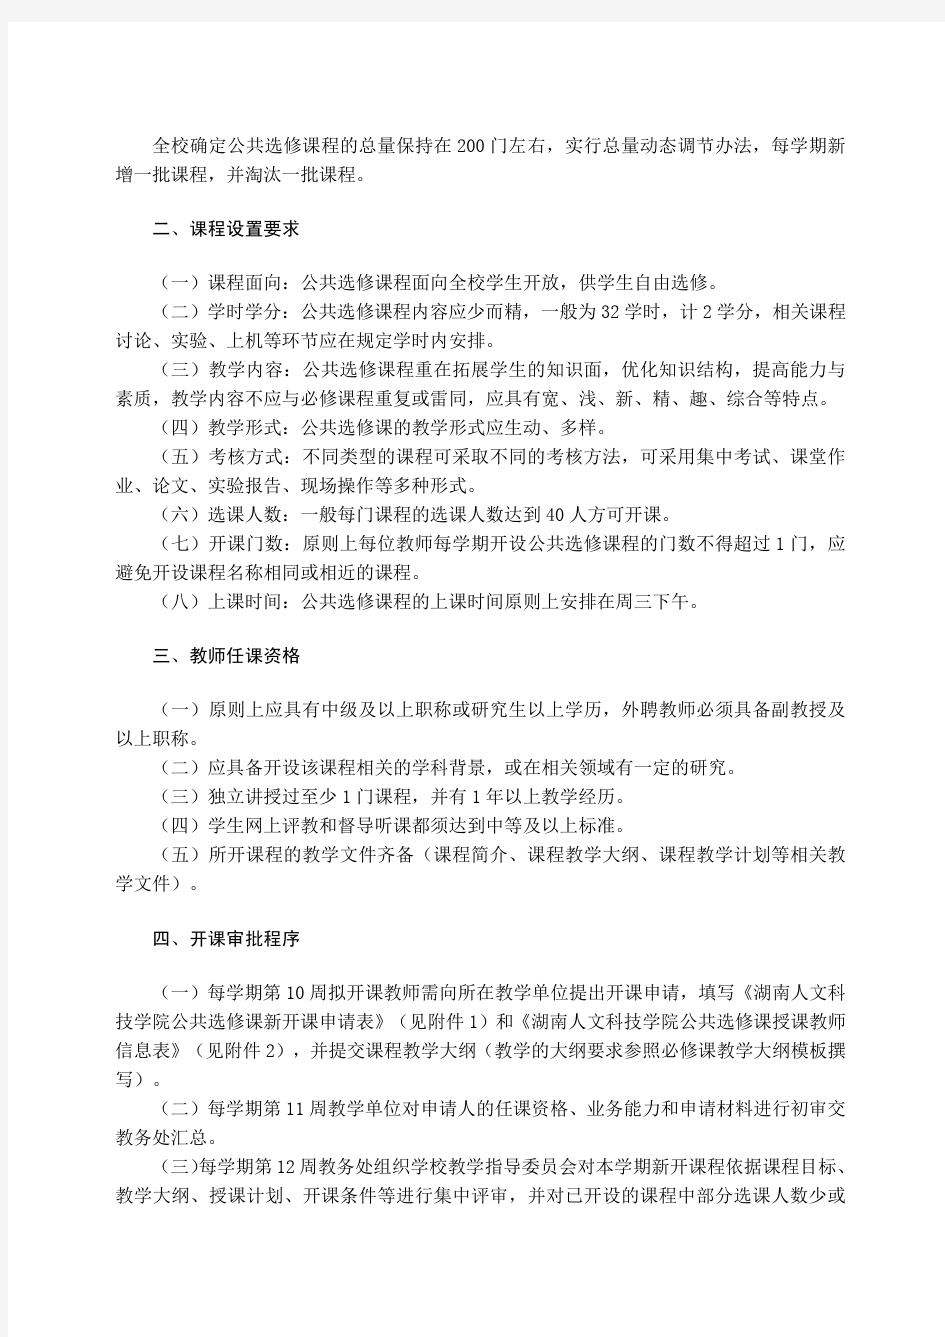 湖南人文科技学院公共选修课管理办法